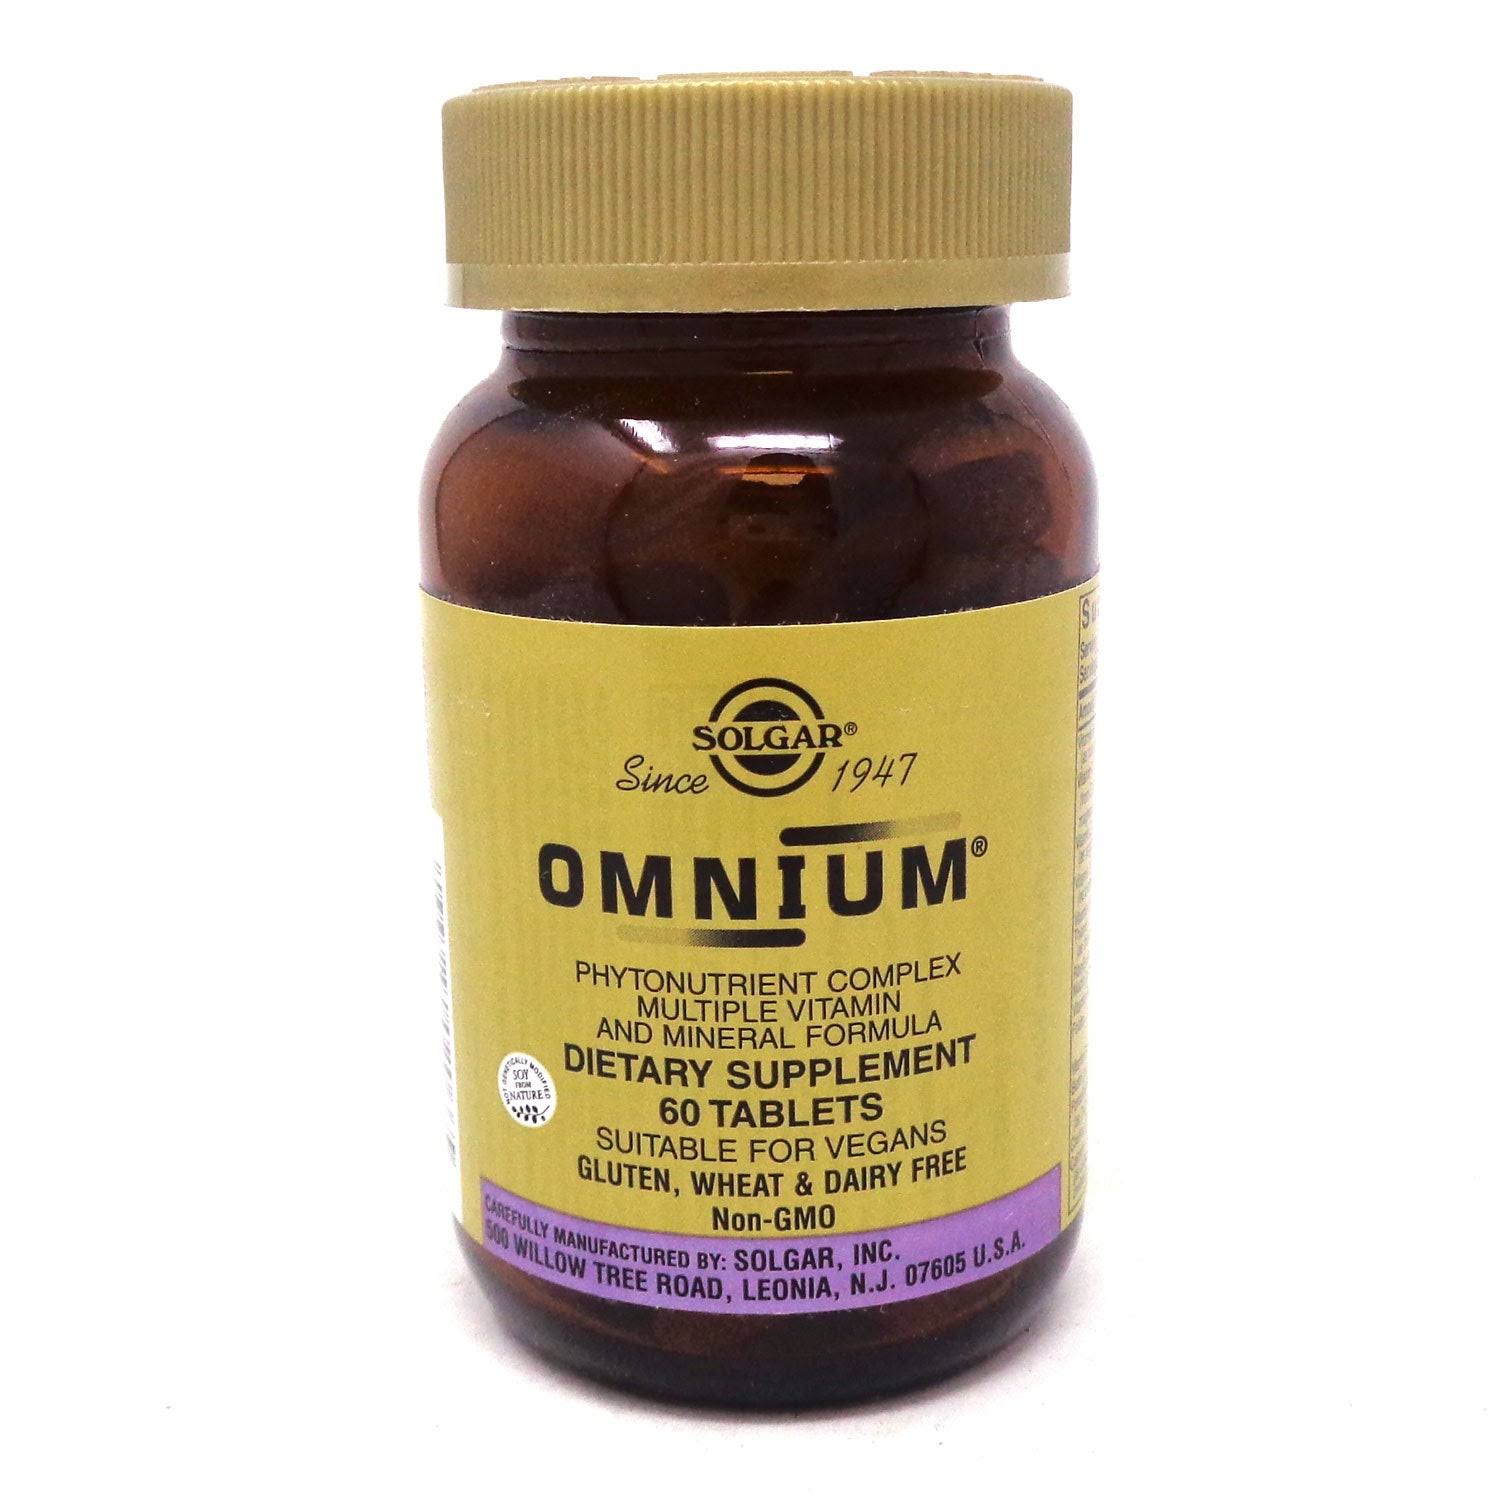 Solgar Omnium Multiple Vitamin and Mineral Formula, Phytonutrient-Rich, Tablets - 60 tablets